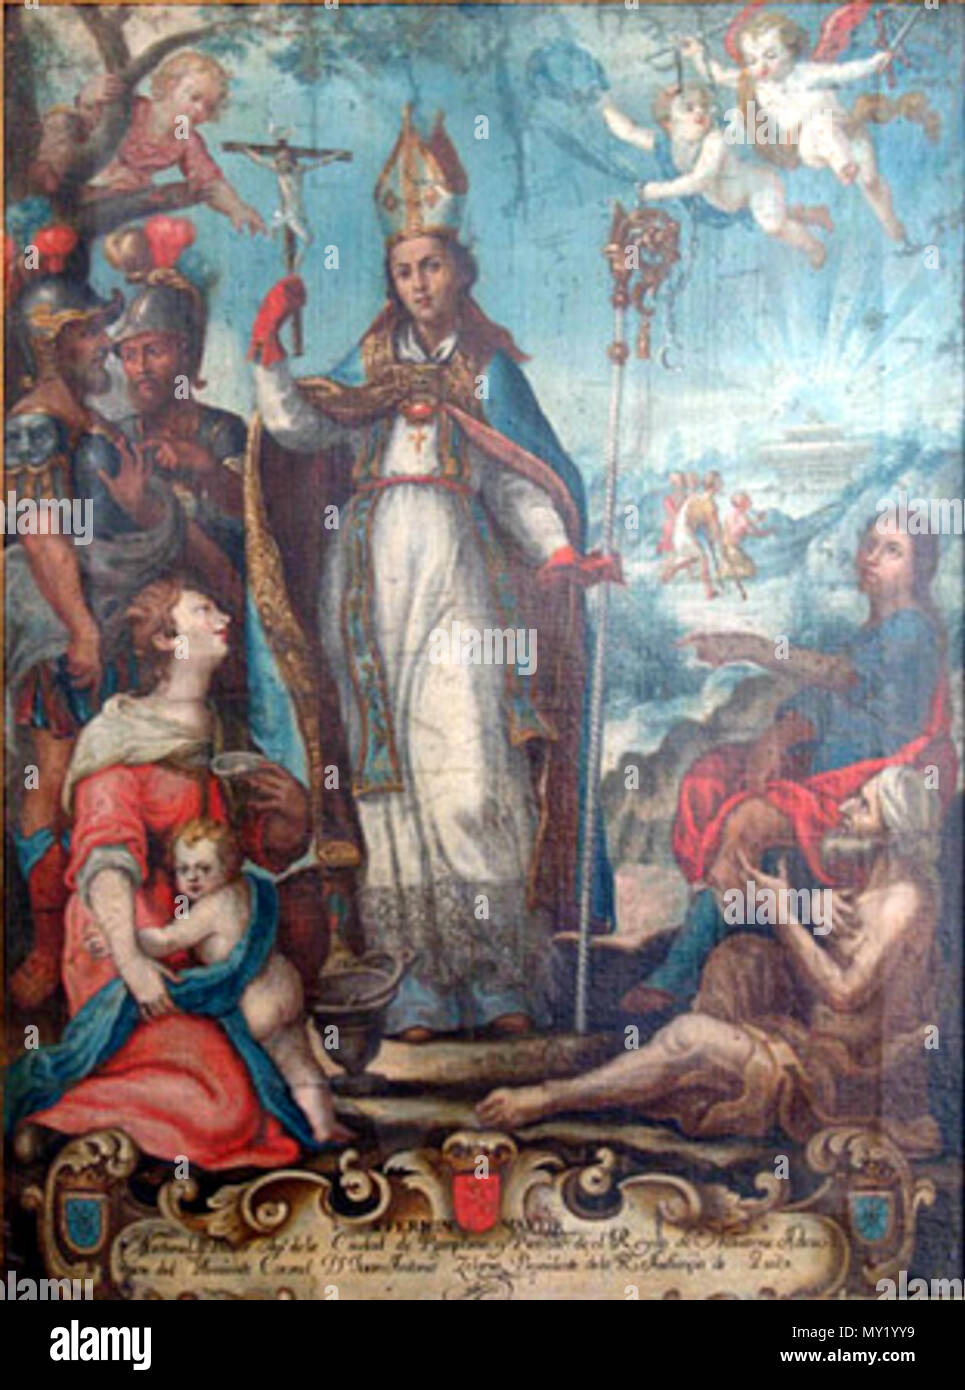 Retocado de una pintura de San Fermín (San Fermín, Sanctus Ferminus;  patrona de Pamplona "Encierro de Toros") en la escuela quiteña (al estilo  de la Escuela de Quito; Escuela Colonial) .